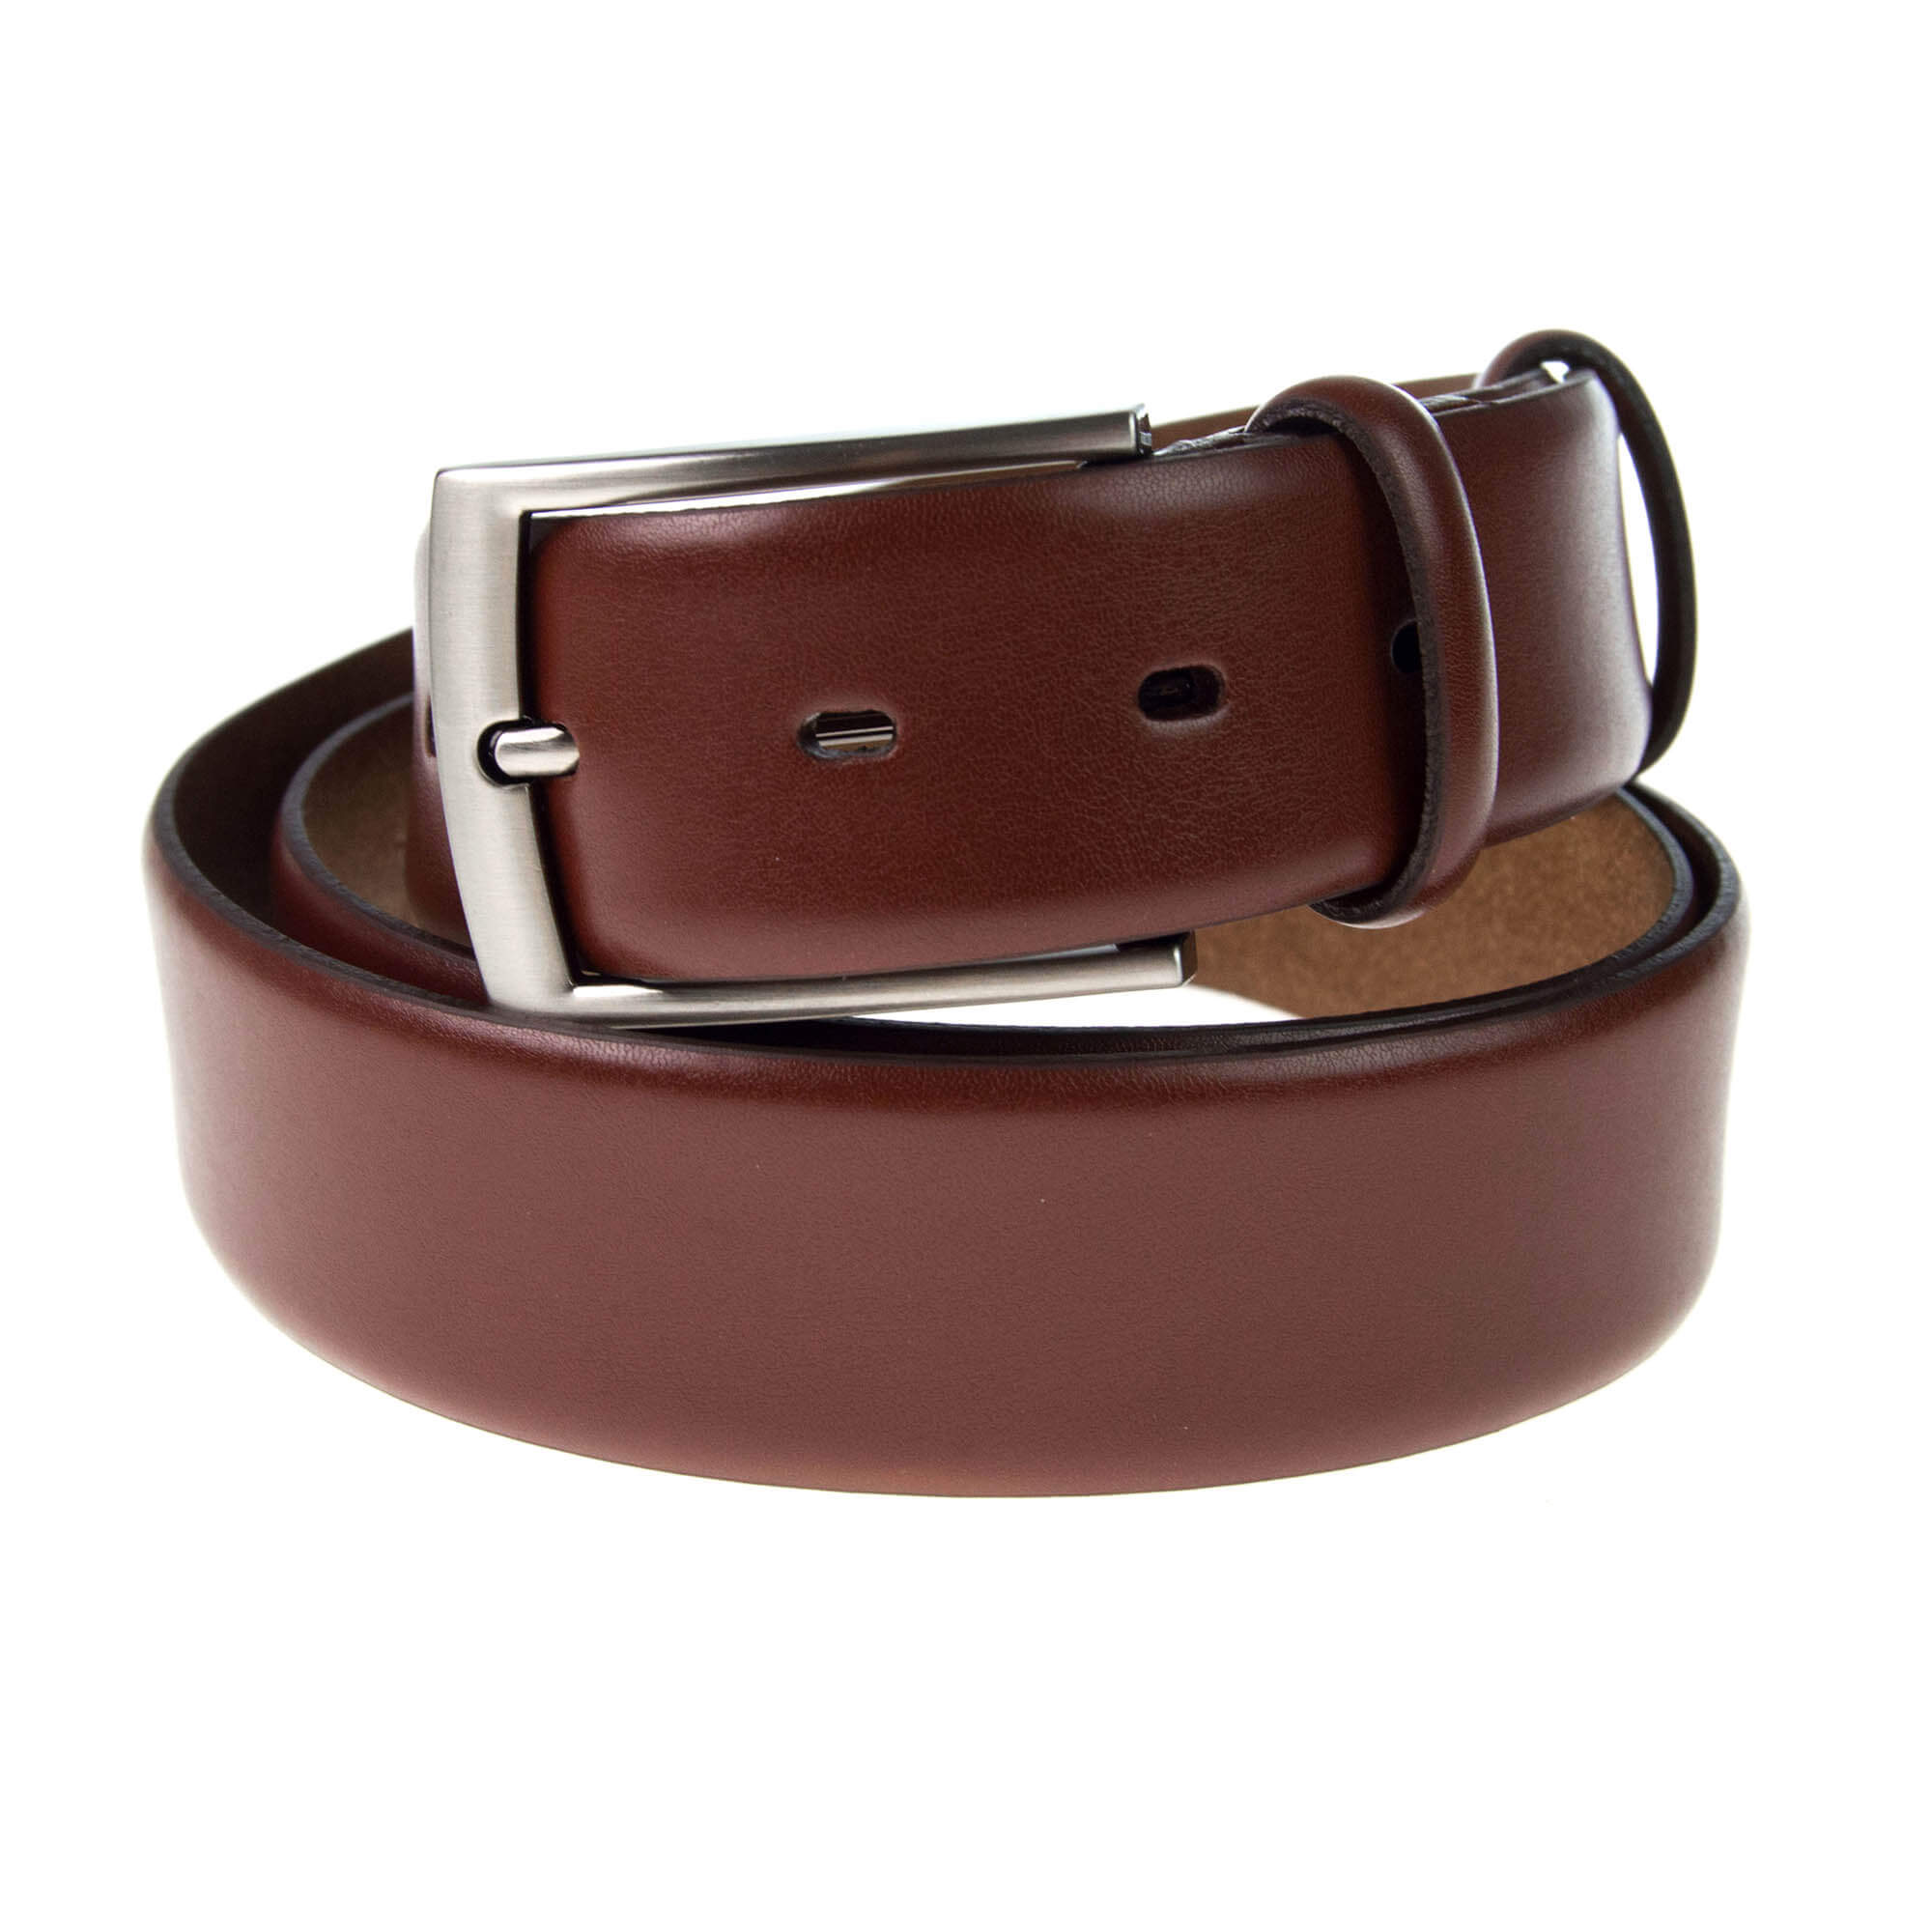 Formal Leather Belt - Brown